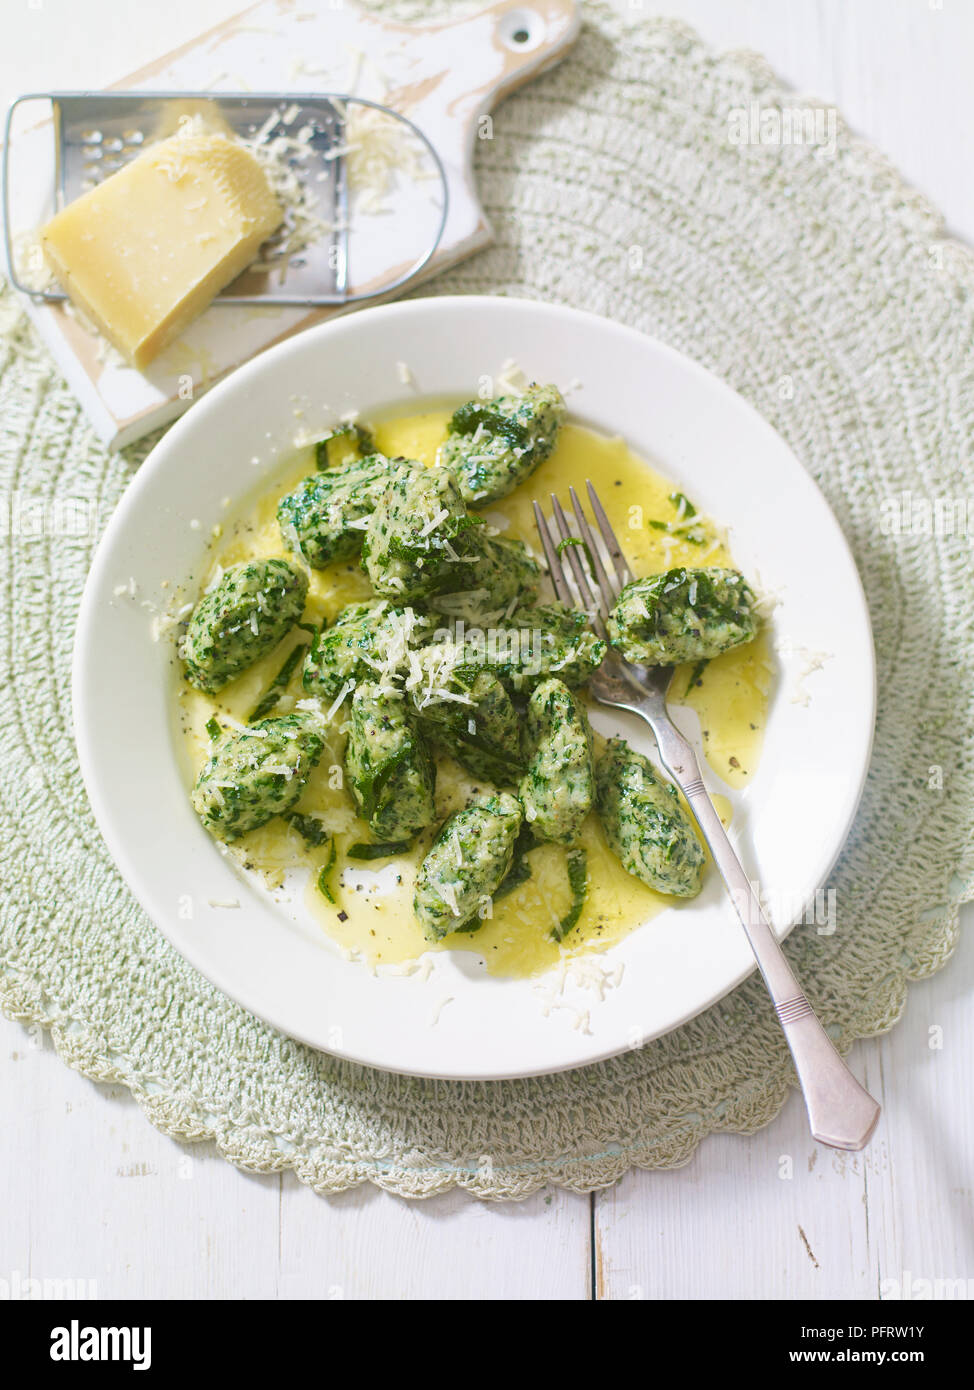 Malfatti alla fiorentina, spinach gnocchi in butter and sage leaves Stock Photo